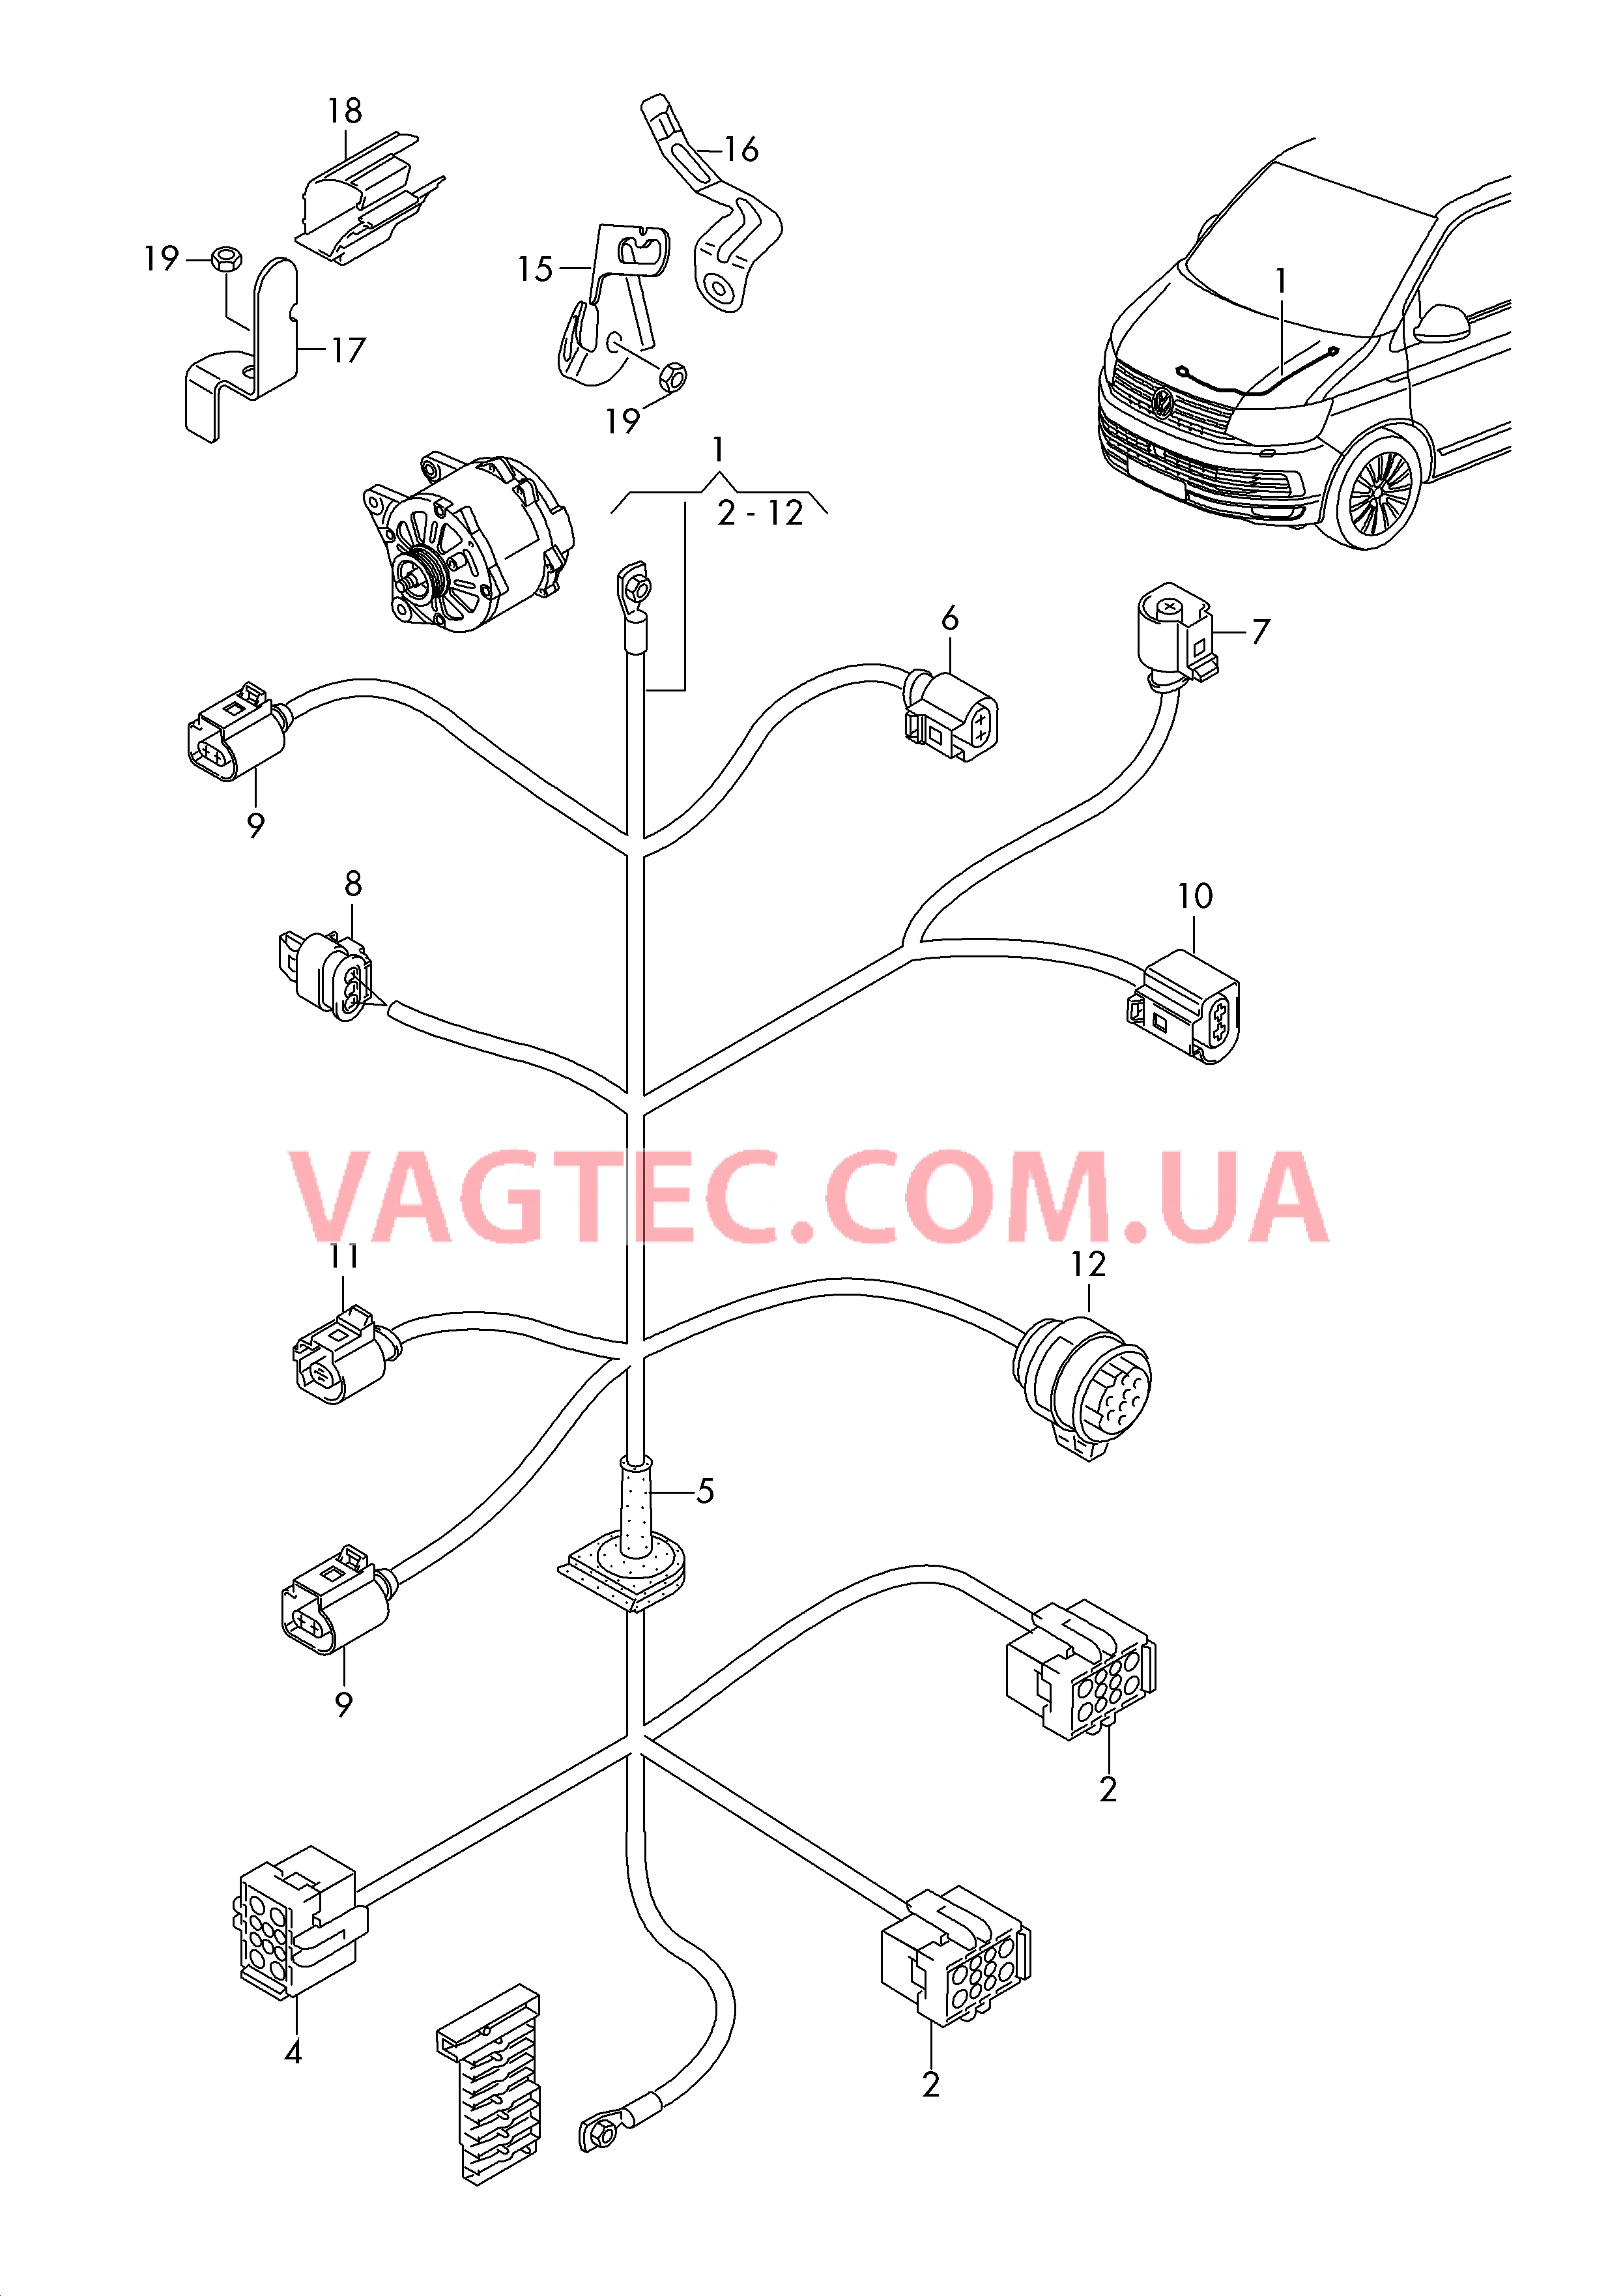 Жгут проводов для двигателя и генератора  для VOLKSWAGEN Transporter 2016